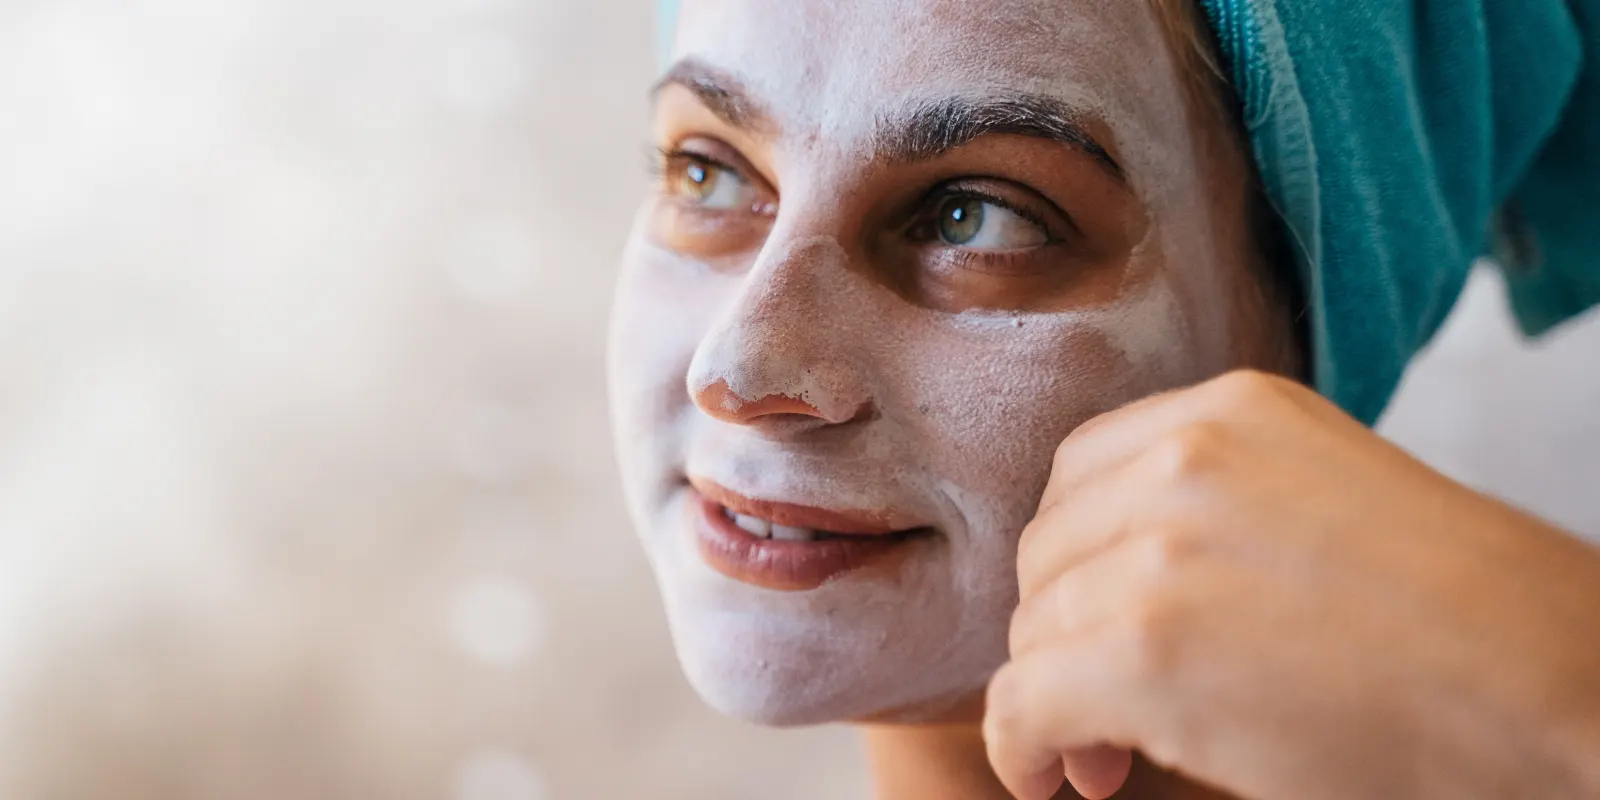 Vrouw smeert dagcrème op haar gezicht na gebruik van zacht water uit een waterontharder, ter verlichting van huidklachten